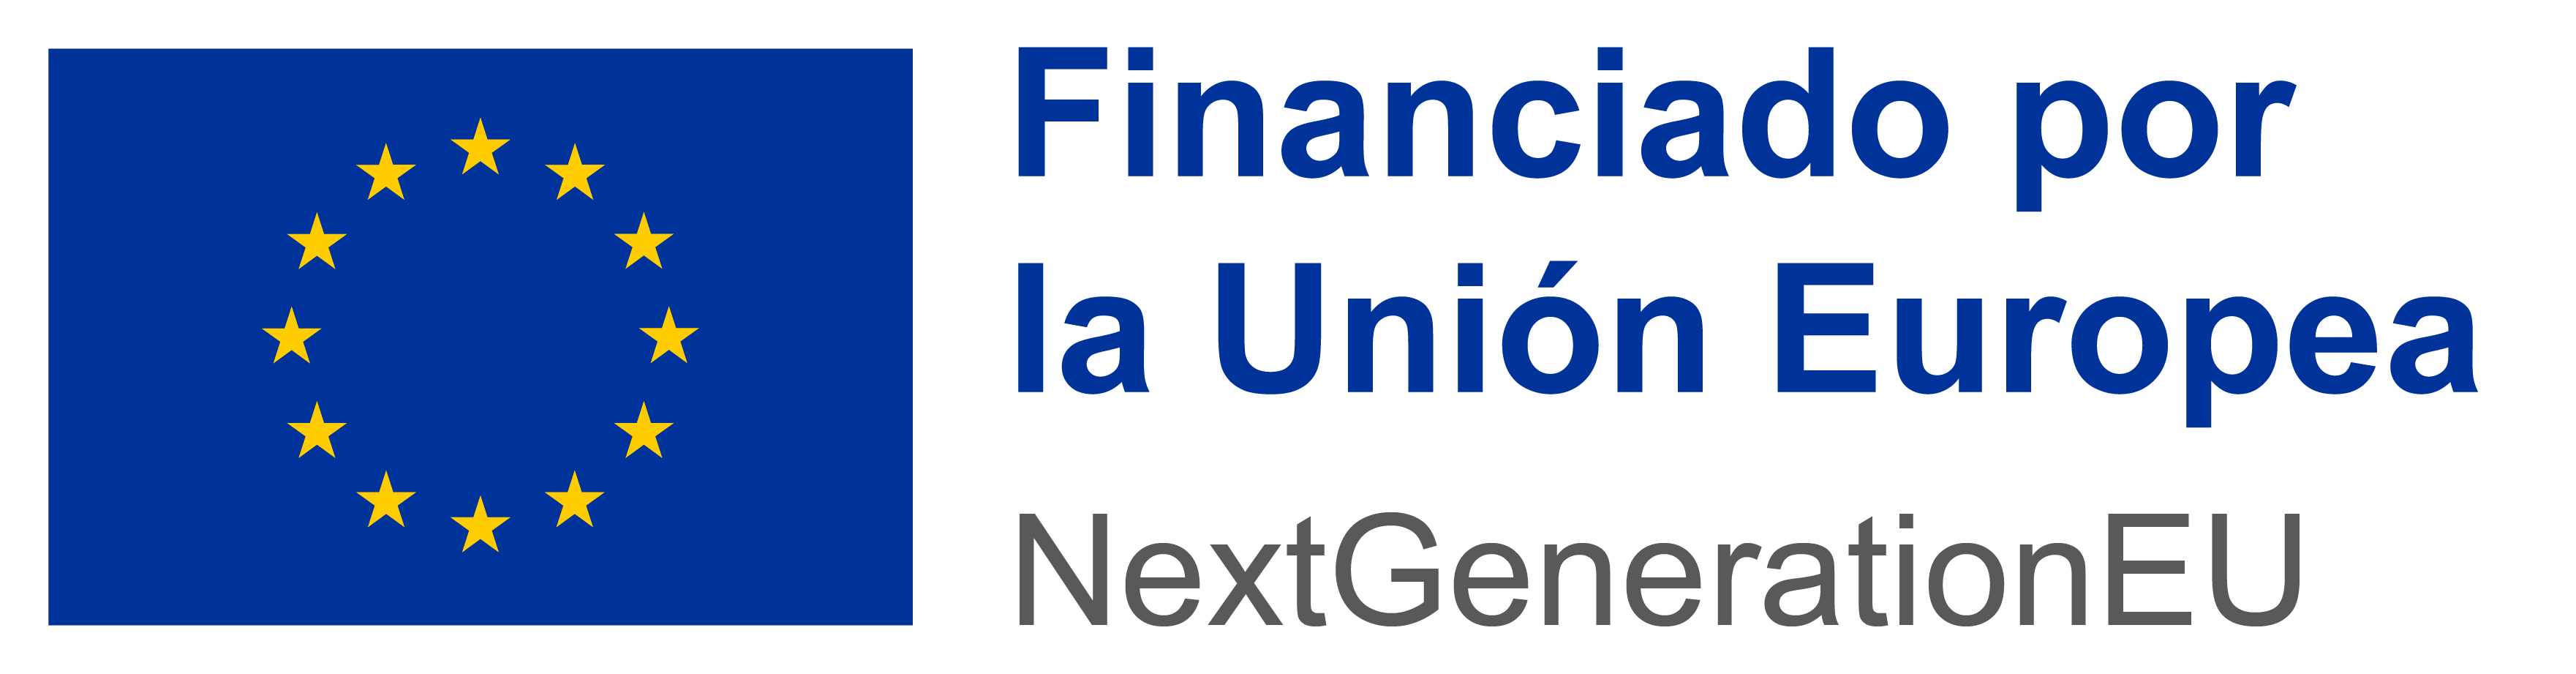 financiado por la Unin Europea - NextGenerationEU